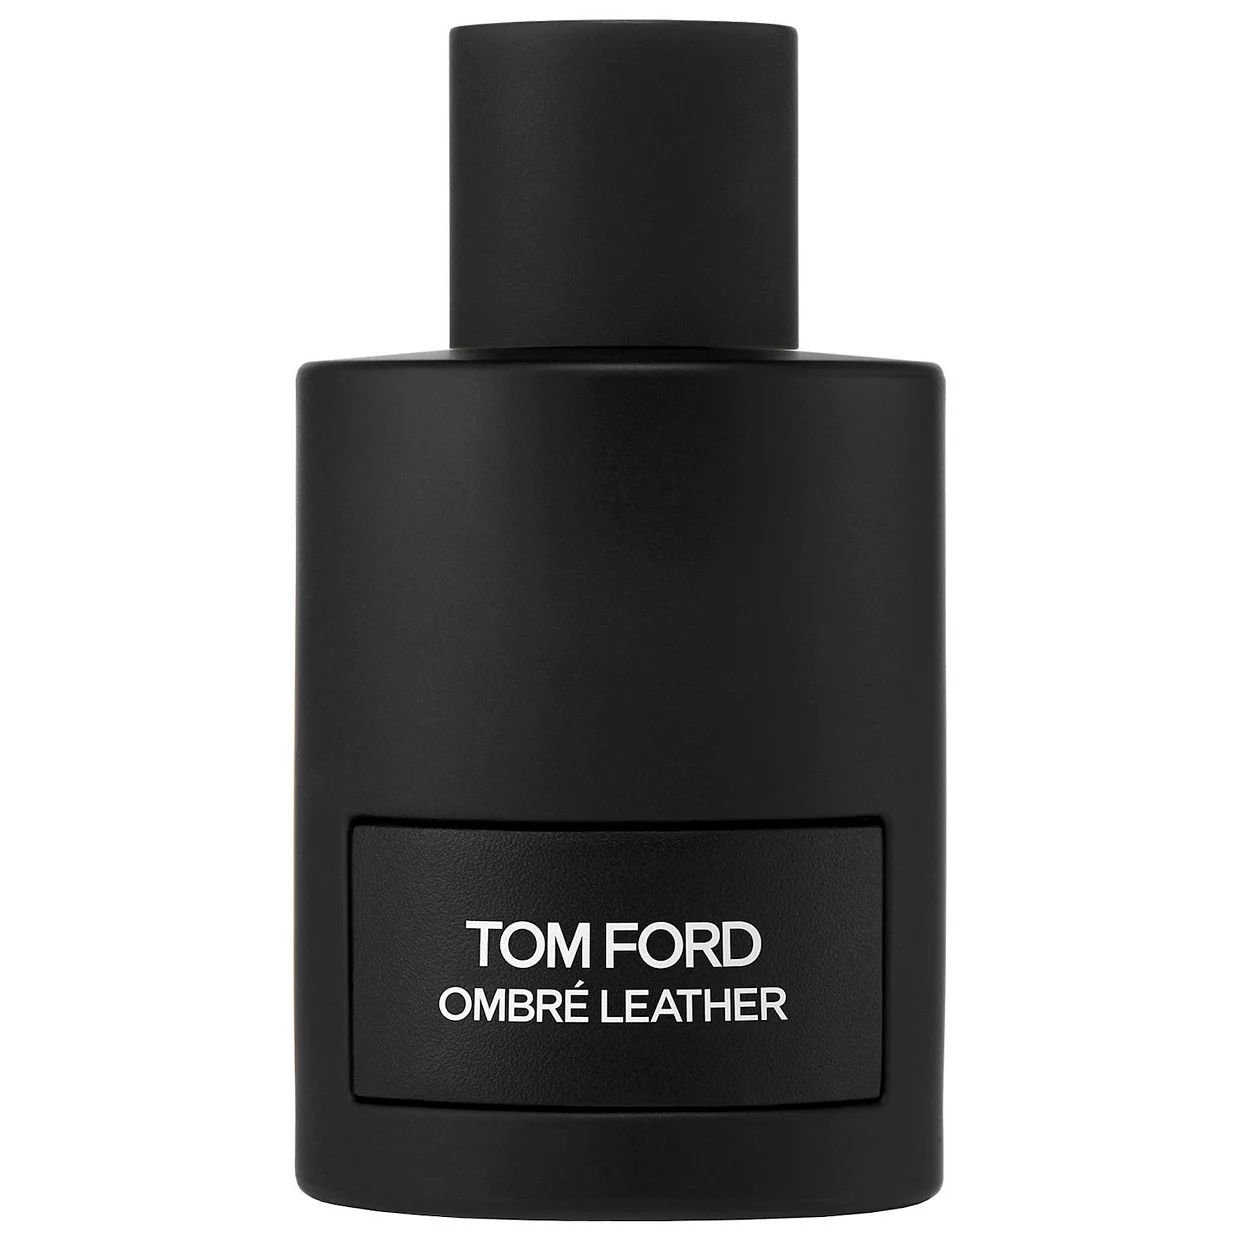 TOM FORD Ombre Leather Eau de Parfum | Kohl's